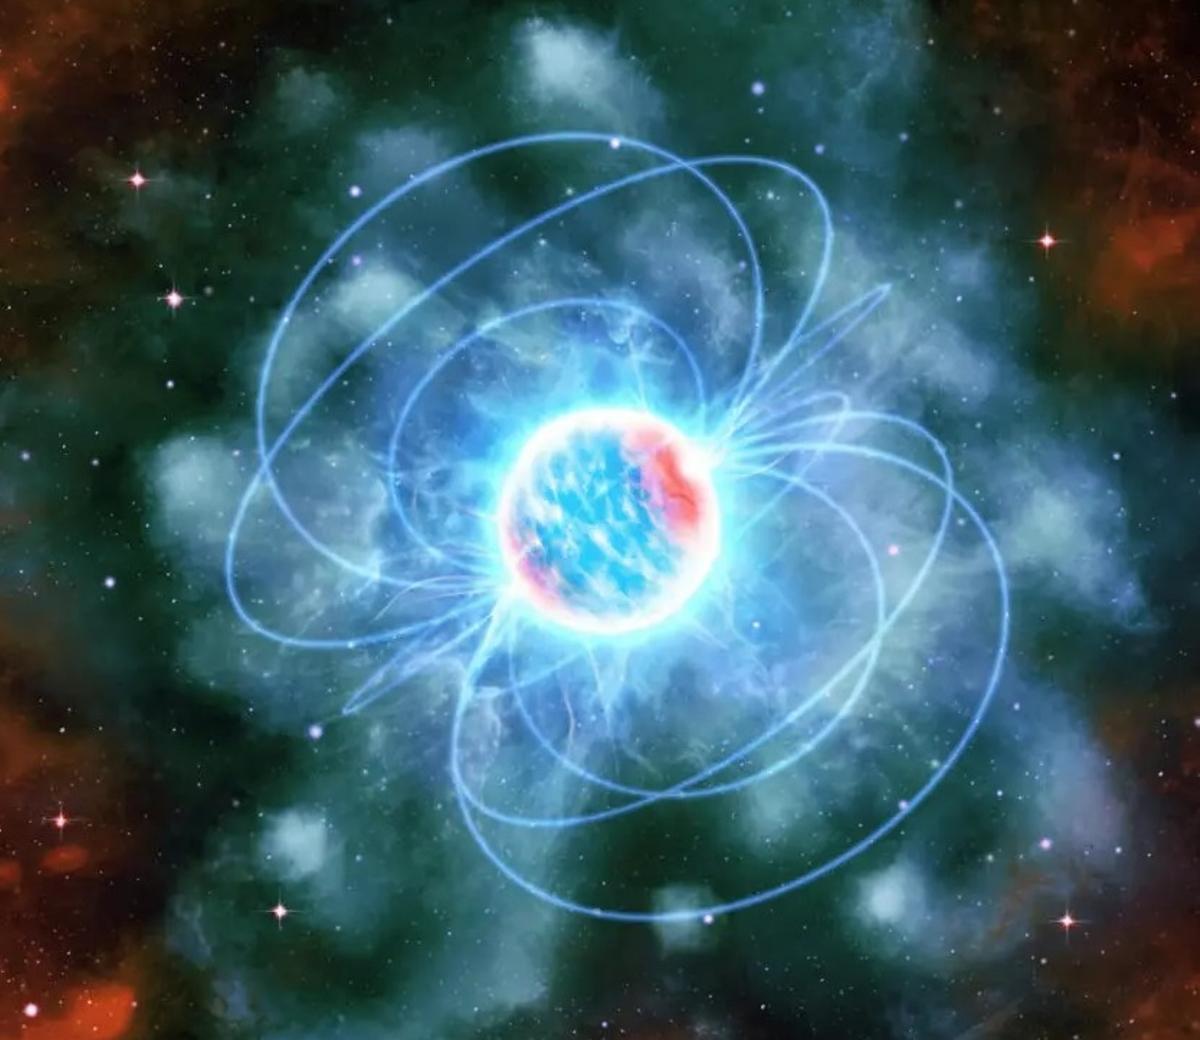 Impresión artística de una estrella de neutrones, mostrada como una esfera azul y roja brillante con rasgos parecidos a chispas que salen volando de ella